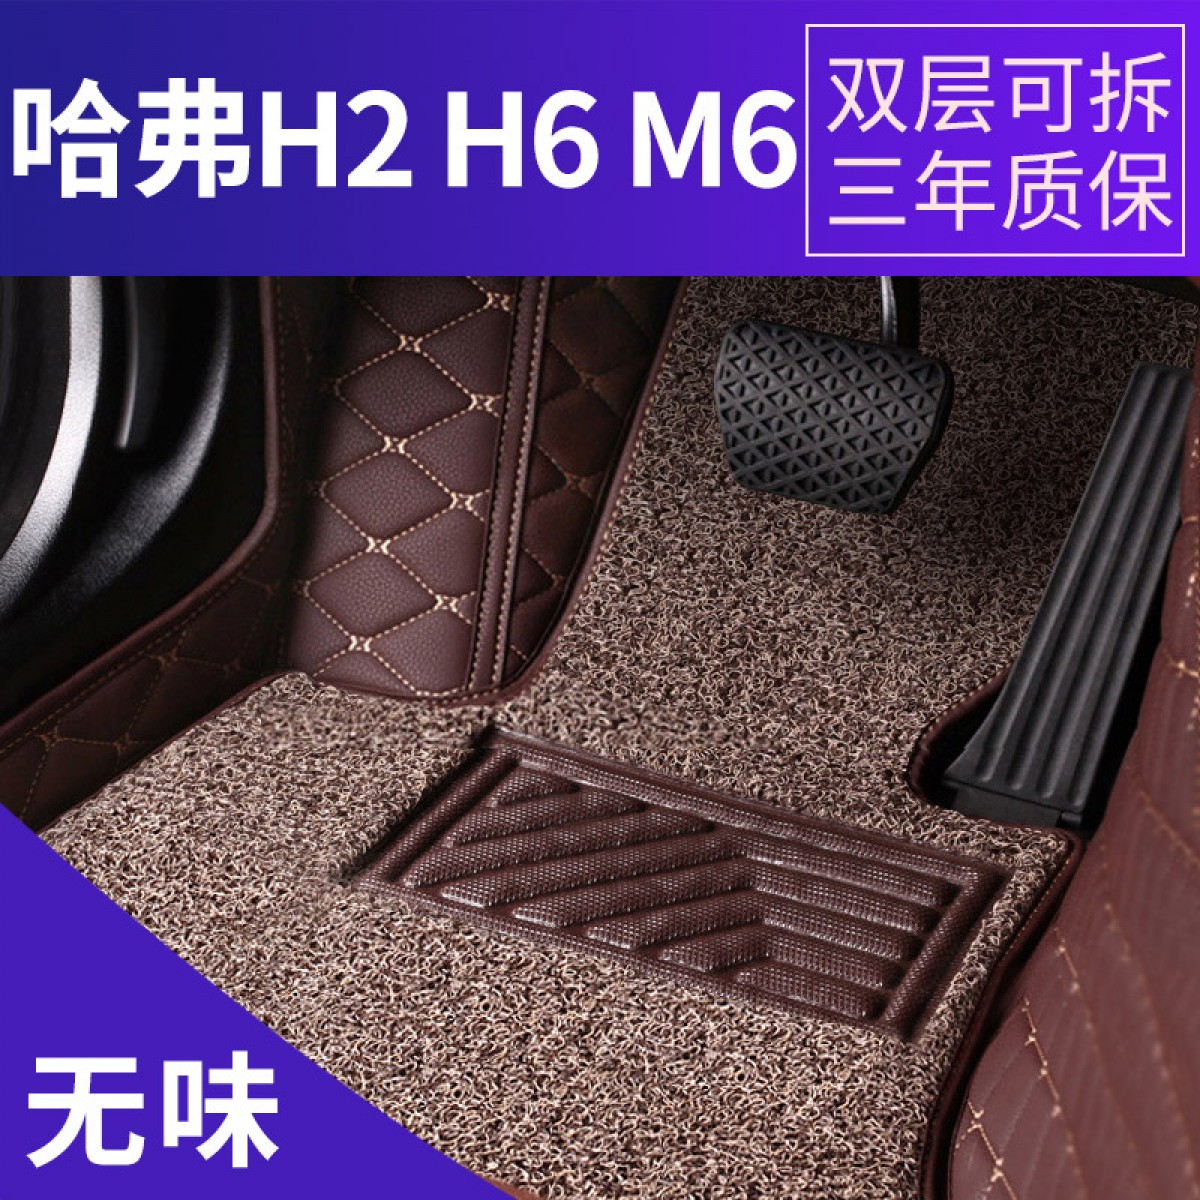 哈弗H2H6M6全包围汽车脚垫专车专用双层丝圈皮革脚垫